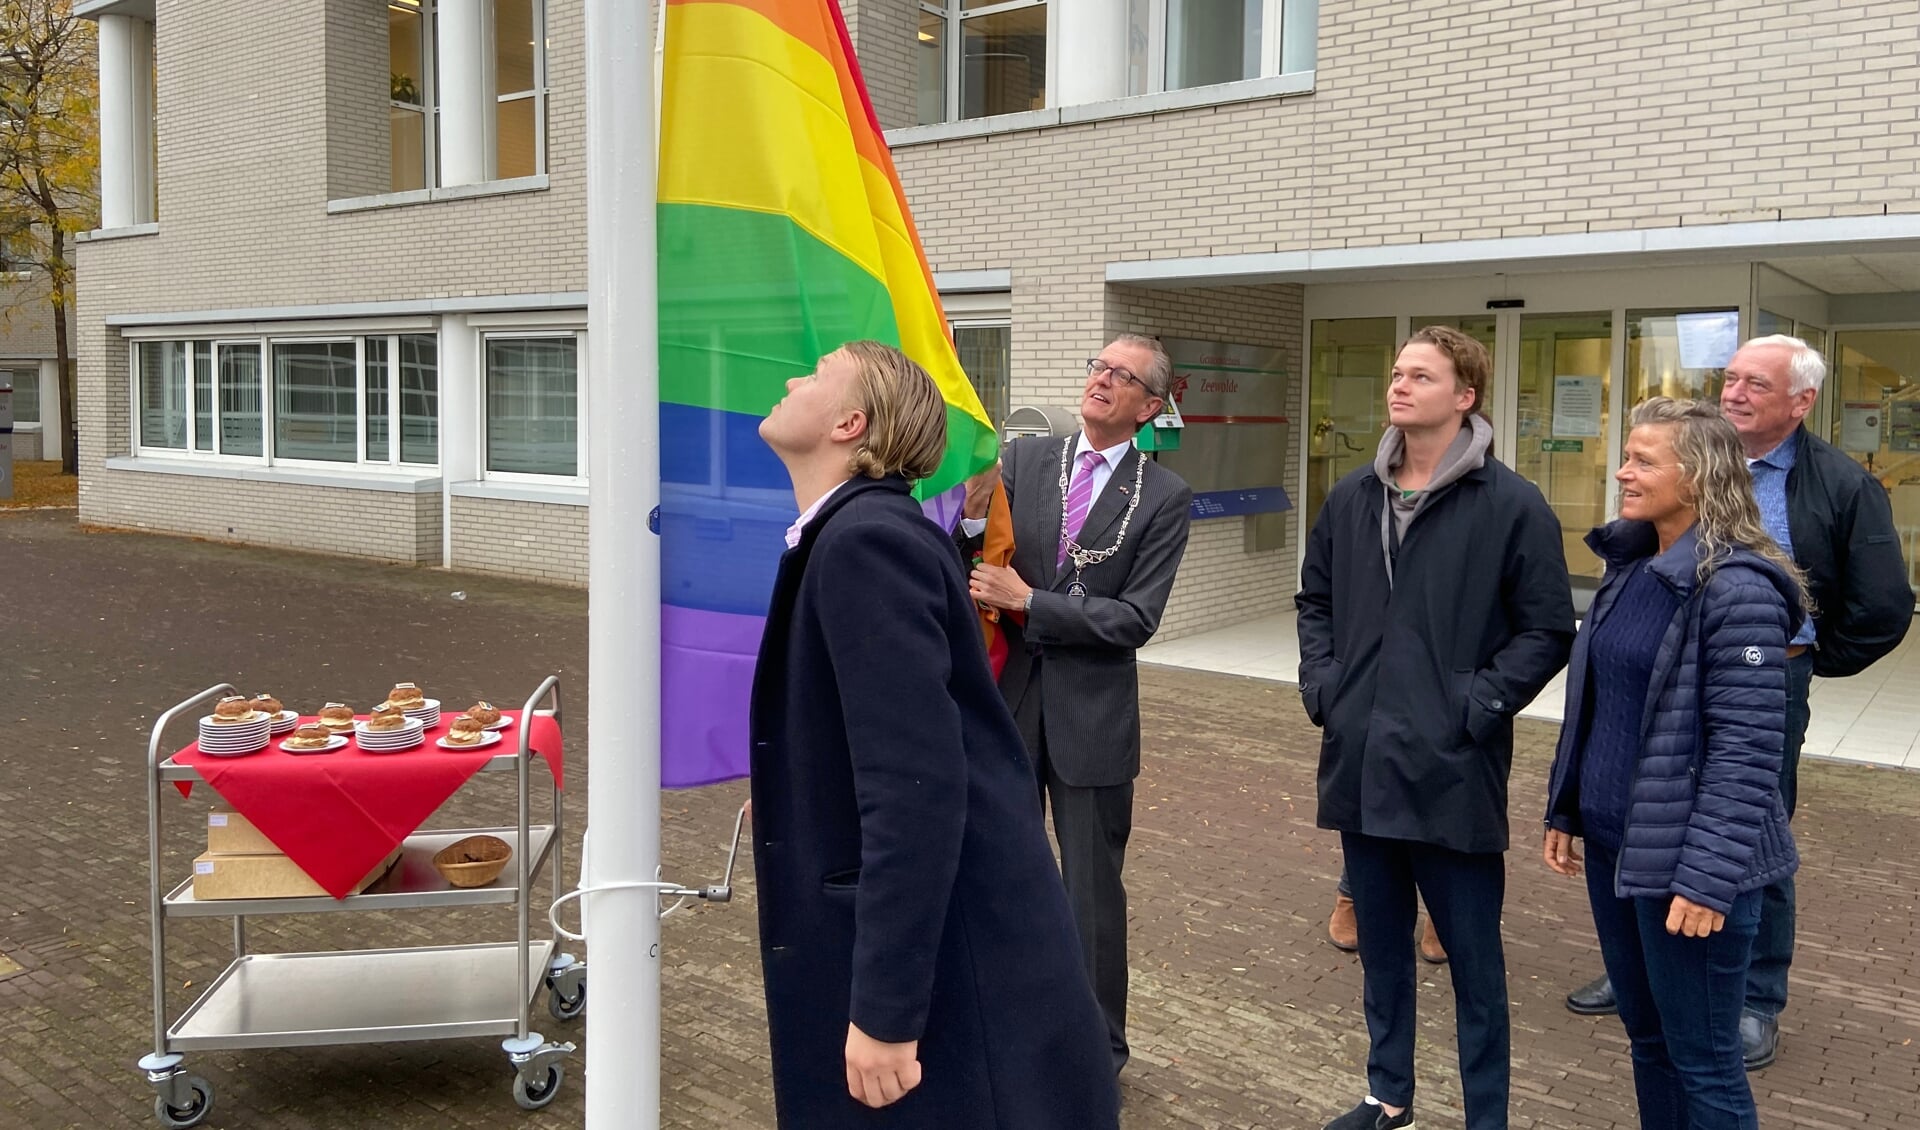 Maarten, de zoon van Gerrit van der Meer, hijst de regenboogvlag. Burgemeester Gorter assisteert. De gebakjes (optimistjes!) staan al klaar